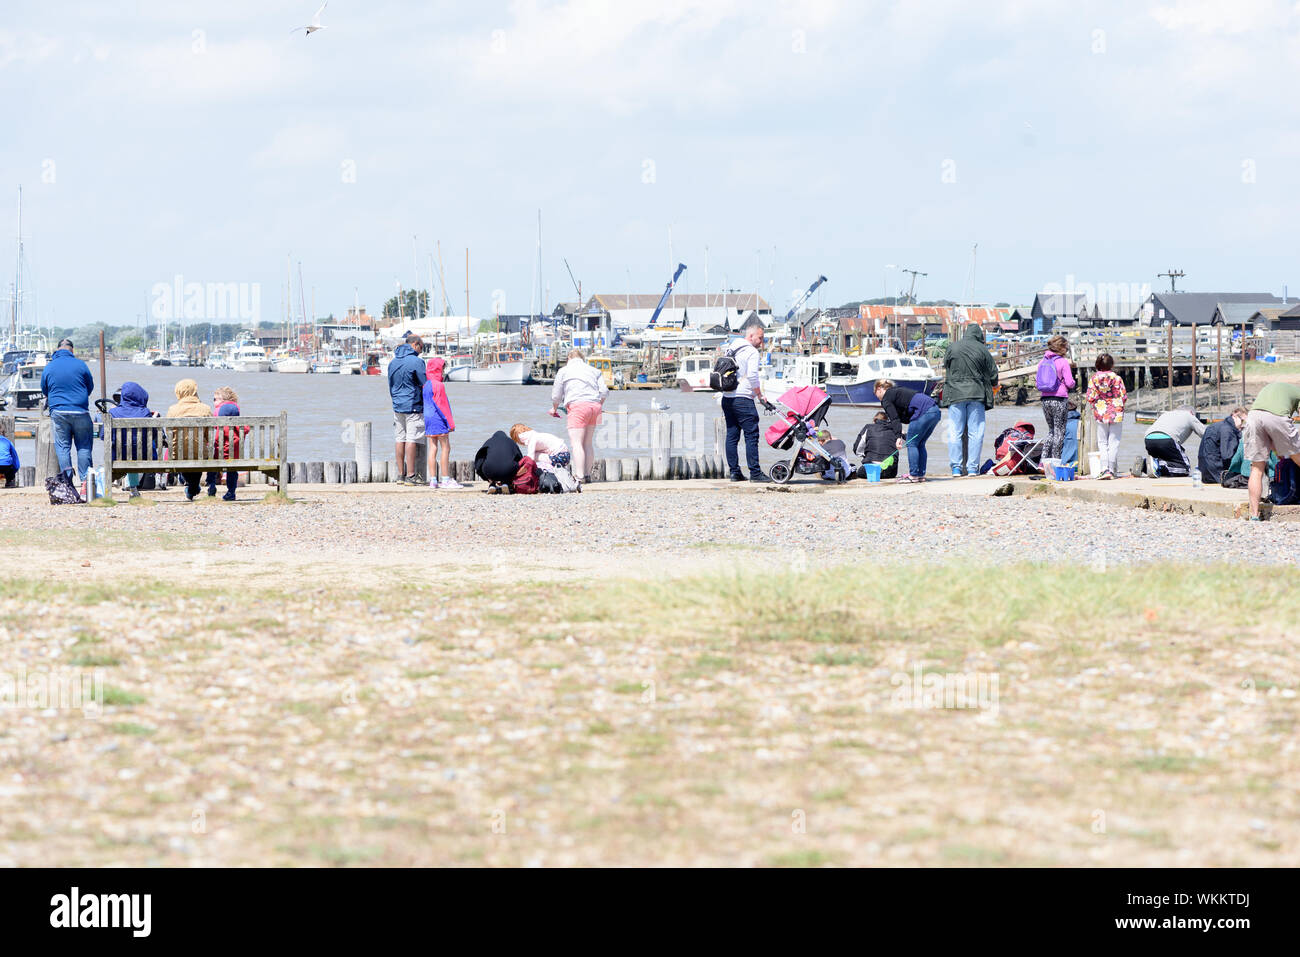 WALBERSWICK, Suffolk/ANGLETERRE - 9e juin 2019 - Les gens en crabe pour le plaisir dans le célèbre site de suffolk coastal Walberswick au cours de l'été 2019 Banque D'Images